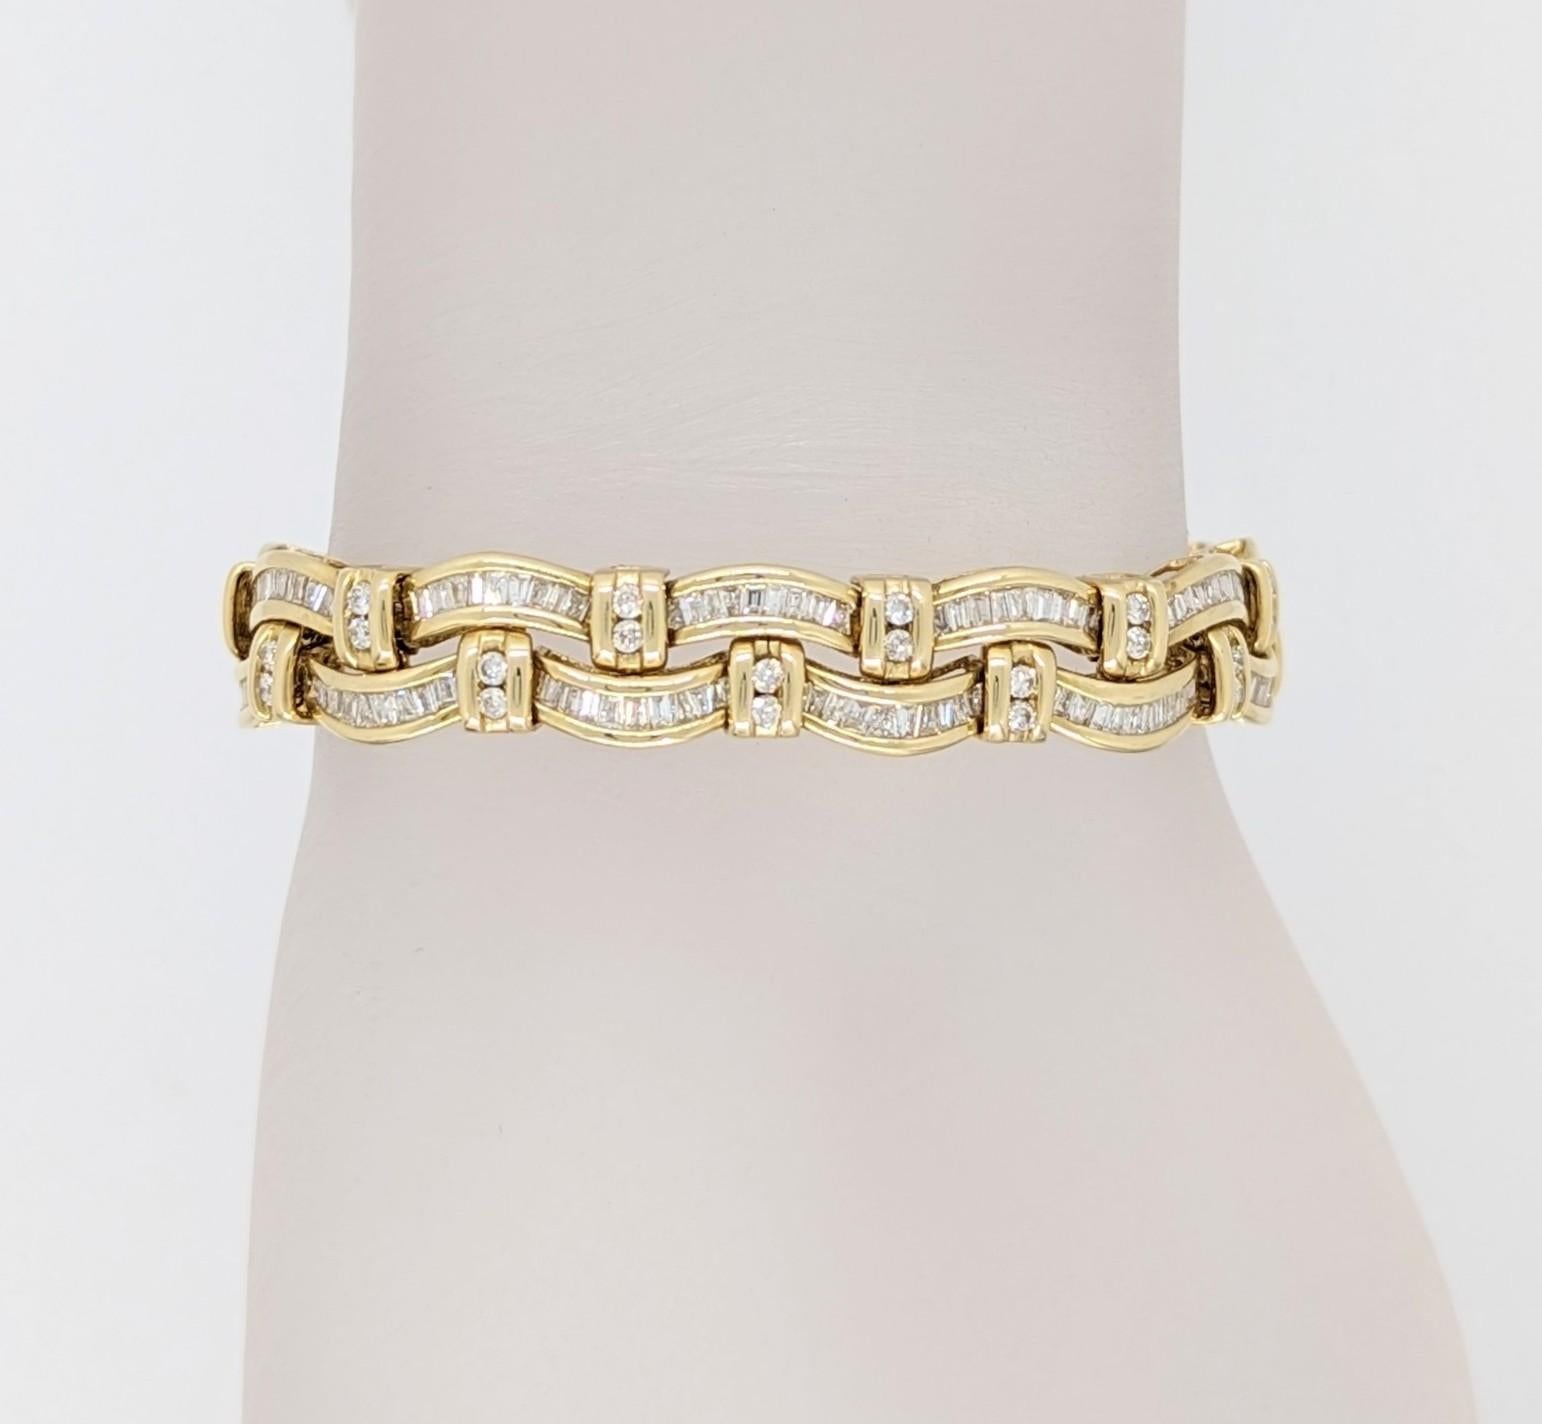 Schönes Armband mit 6,00 ct. weißen Baguettes und runden Diamanten von guter Qualität.  Handgefertigt in 14k Gelbgold.  Die Länge beträgt 7